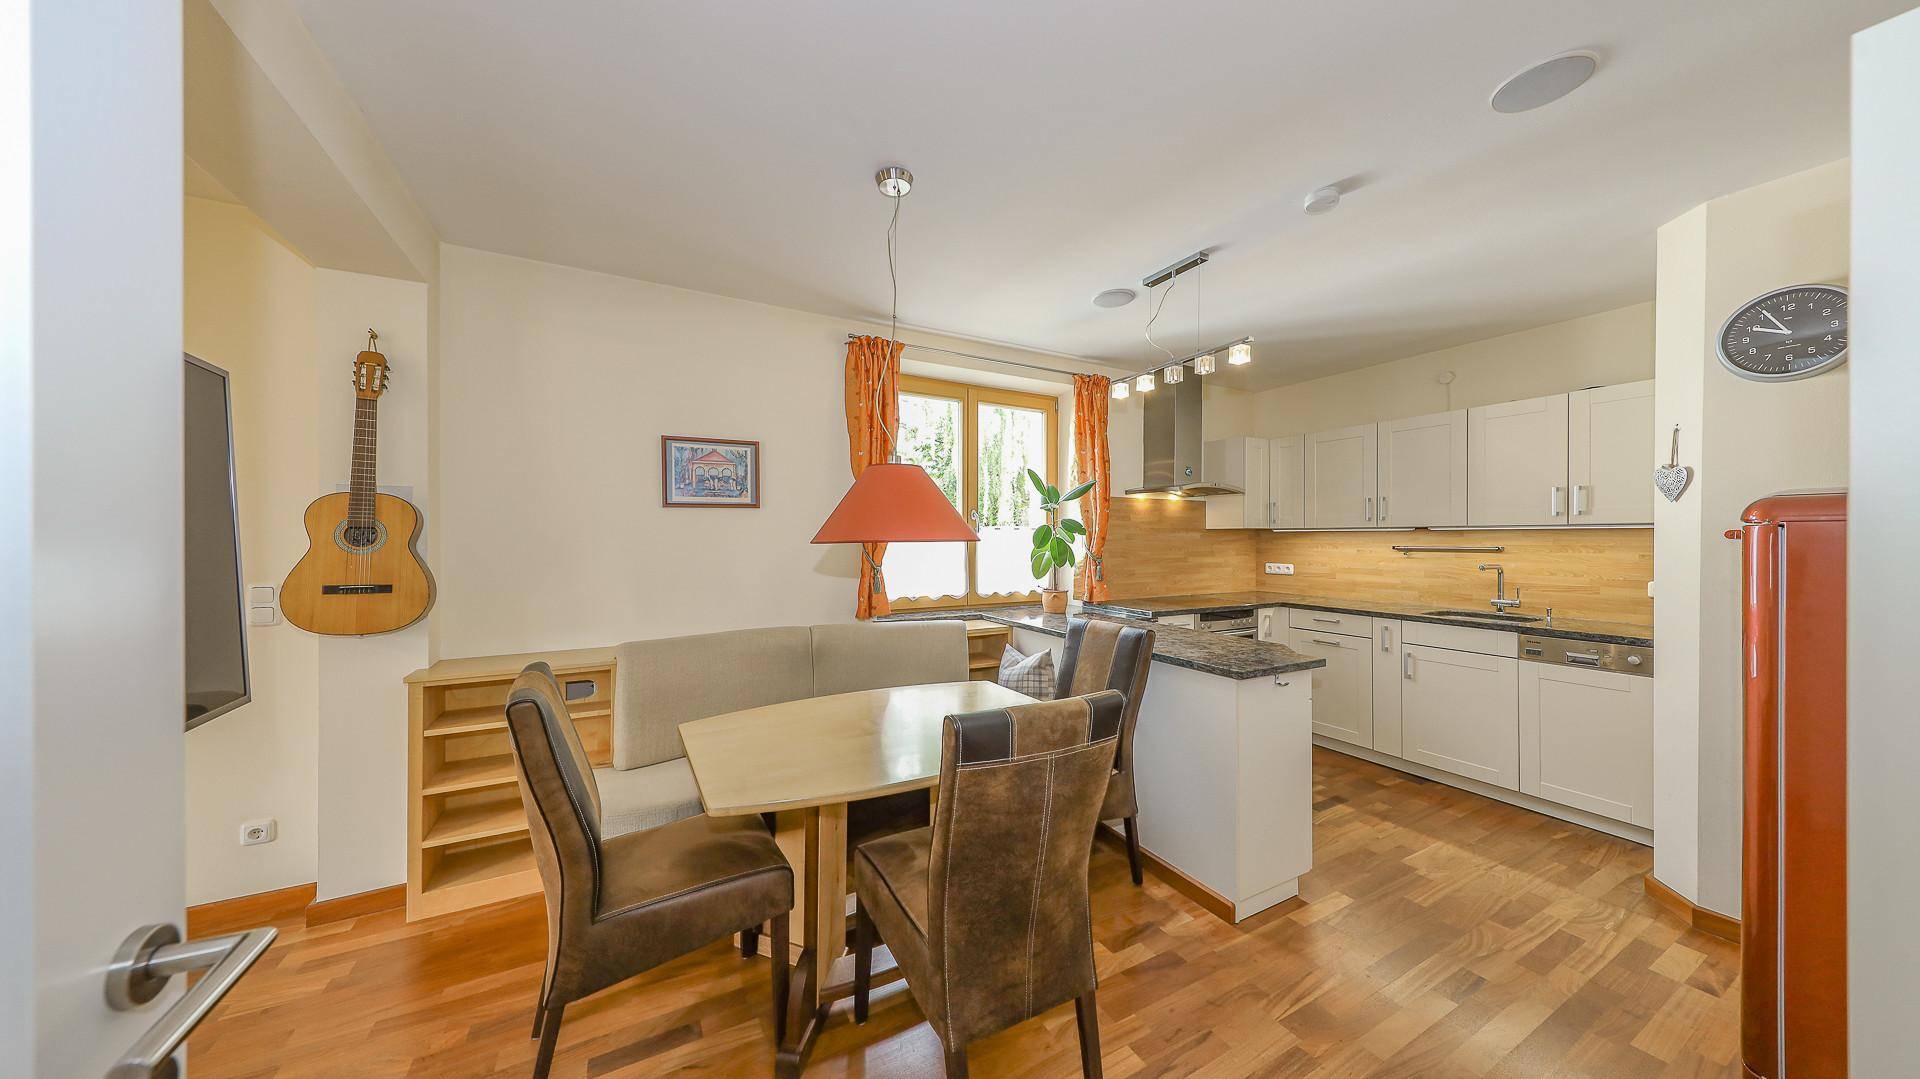 KITZIMMO-hochwertige Wohnung in zentraler Ruhelage kaufen - Immobilien Kitzbühel.